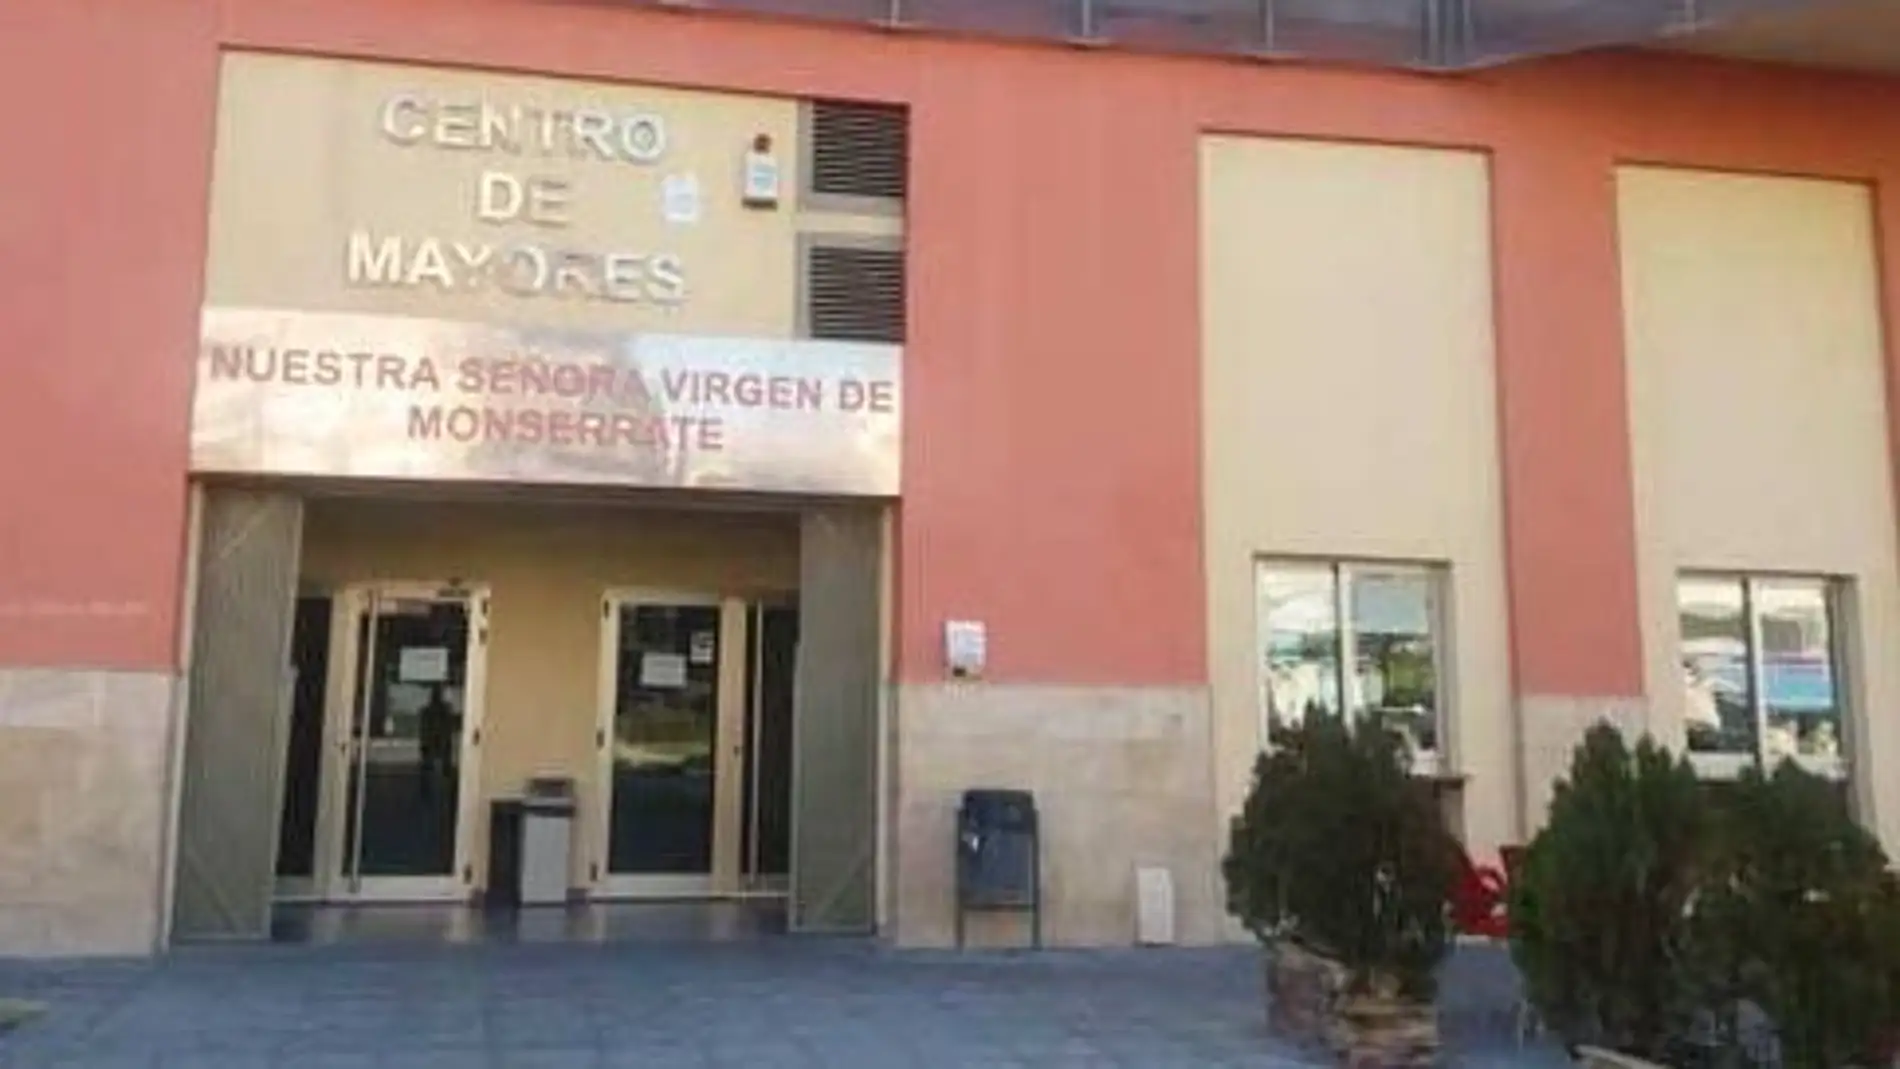 Ha pasado ya un año desde que los centros de mayores del municipio de Orihuela cambiaban su forma de trabajar, por culpa de la pandemia del COVID-19 